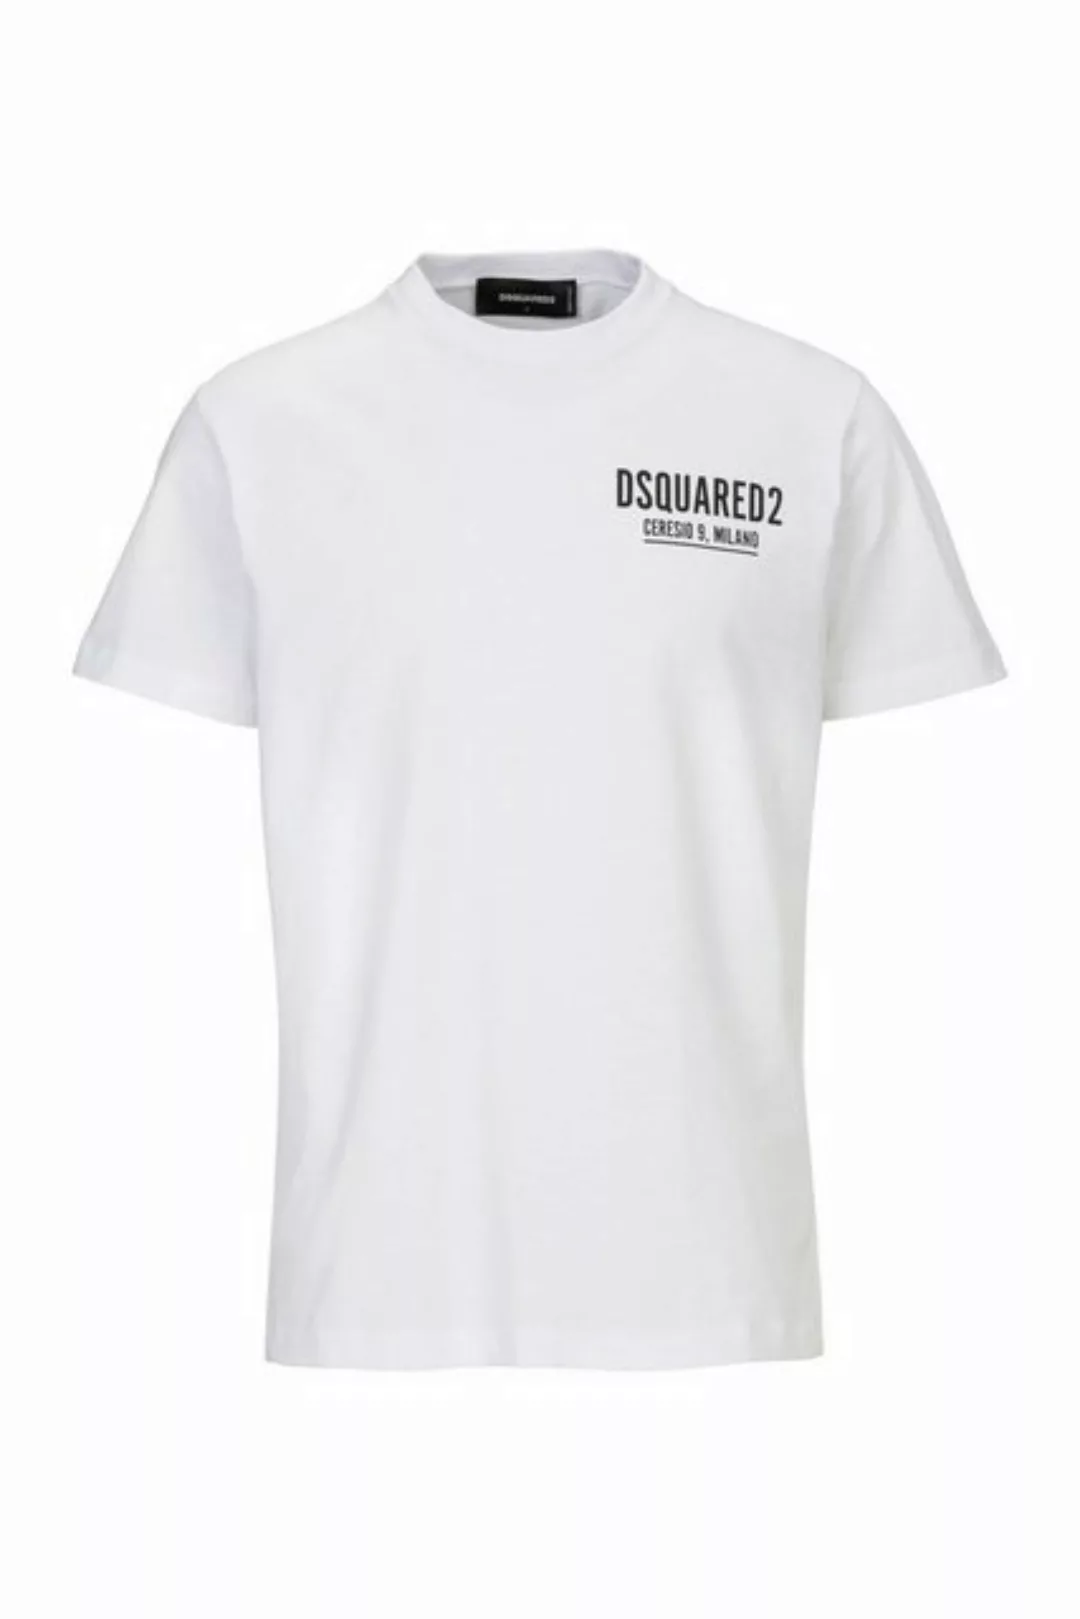 Dsquared2 T-Shirt Ceresio 9 Cool Tee günstig online kaufen